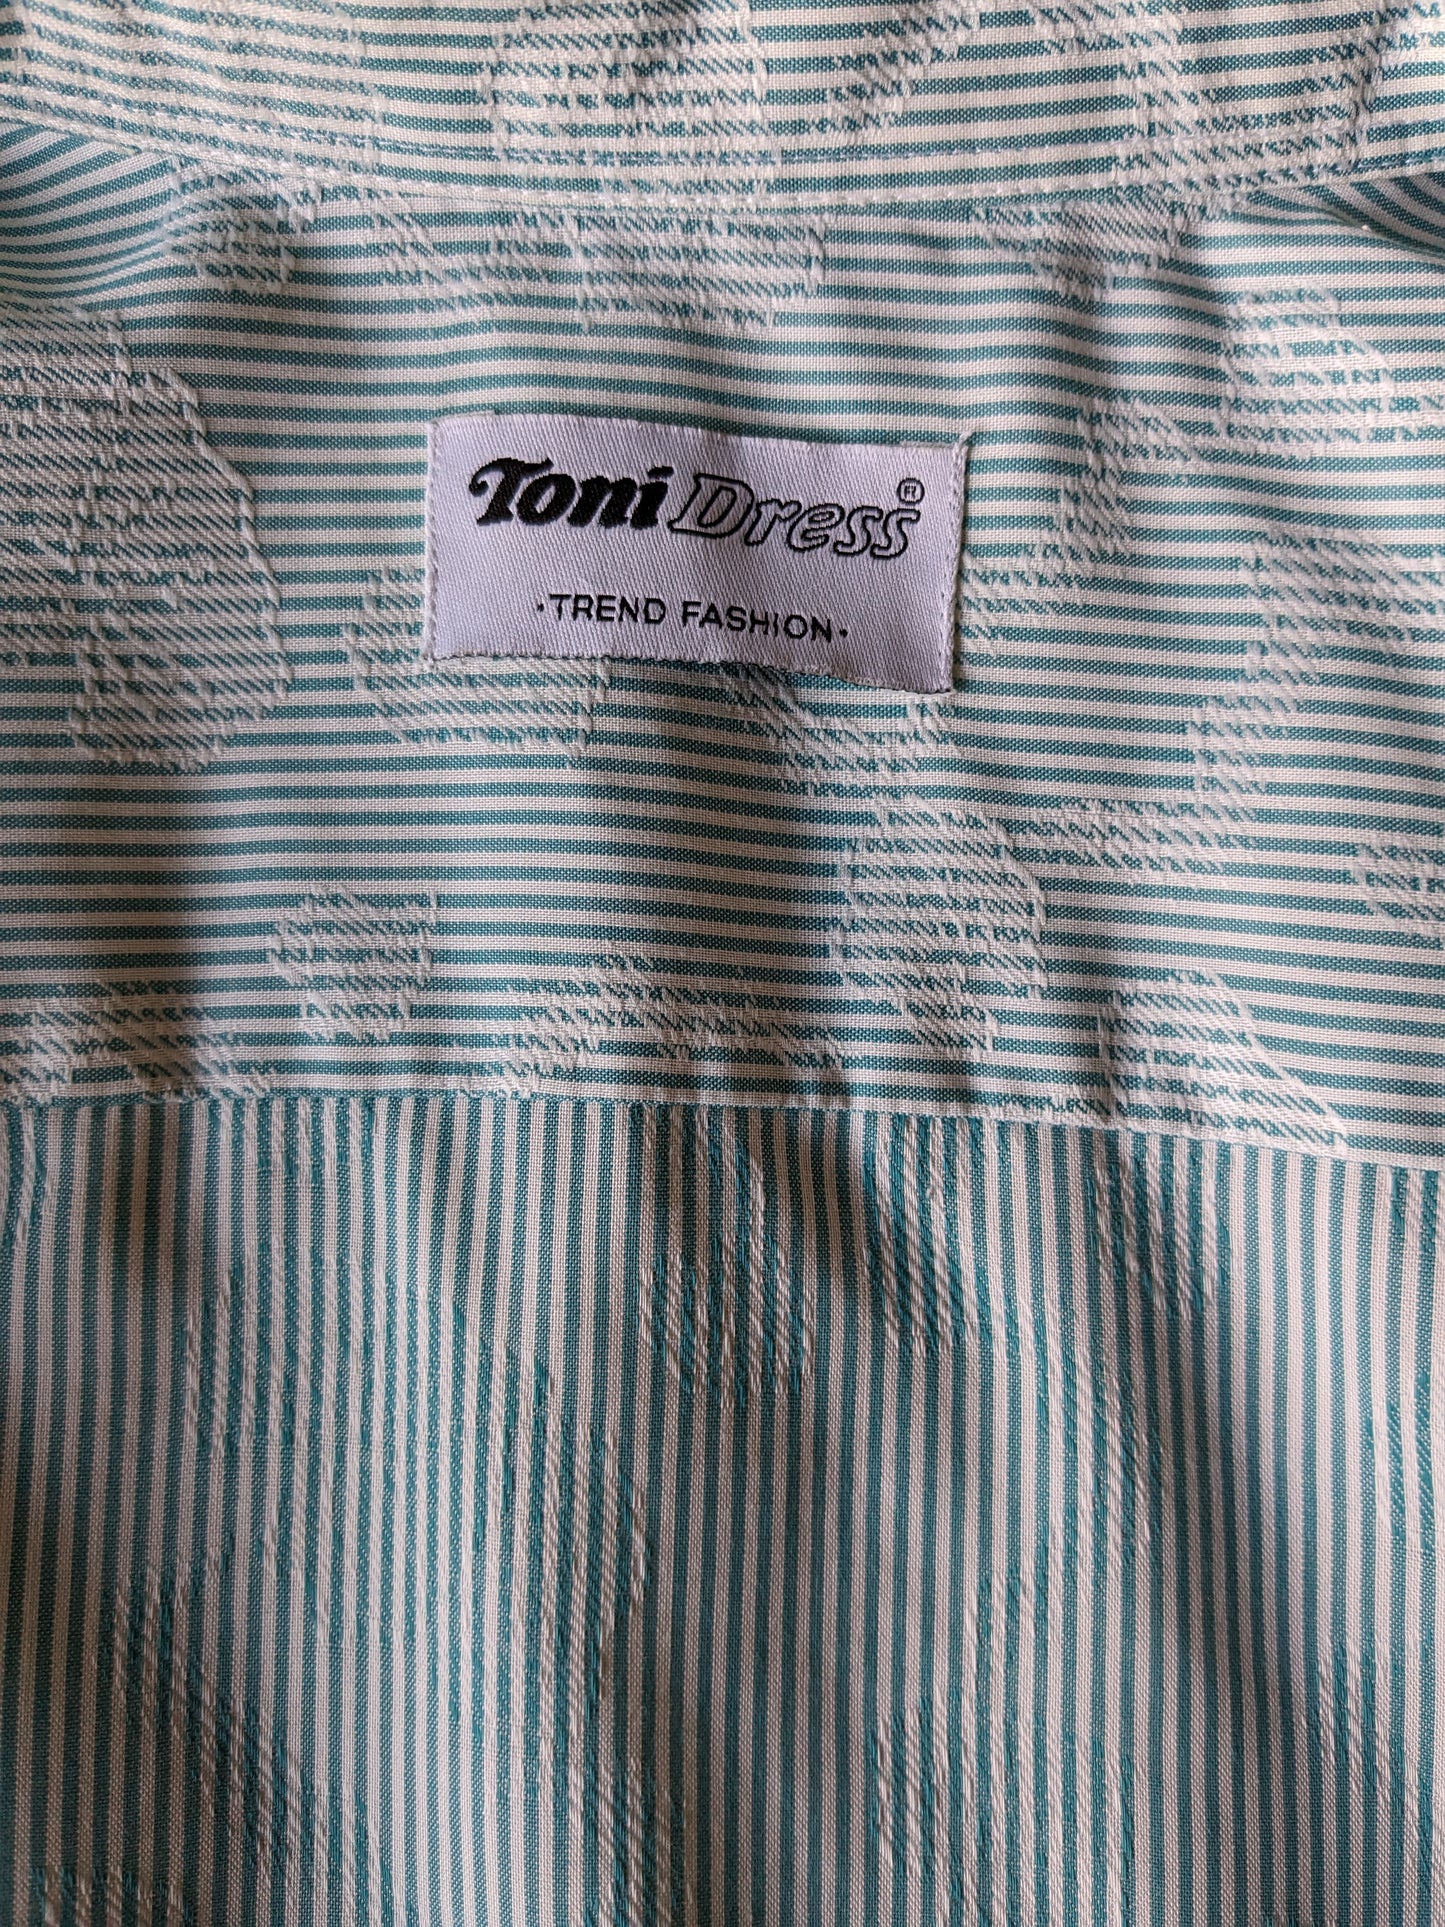 Camisa de vestir de Toni vintage. Blanco verde rayado con motivo de hoja blanca. Talla M.